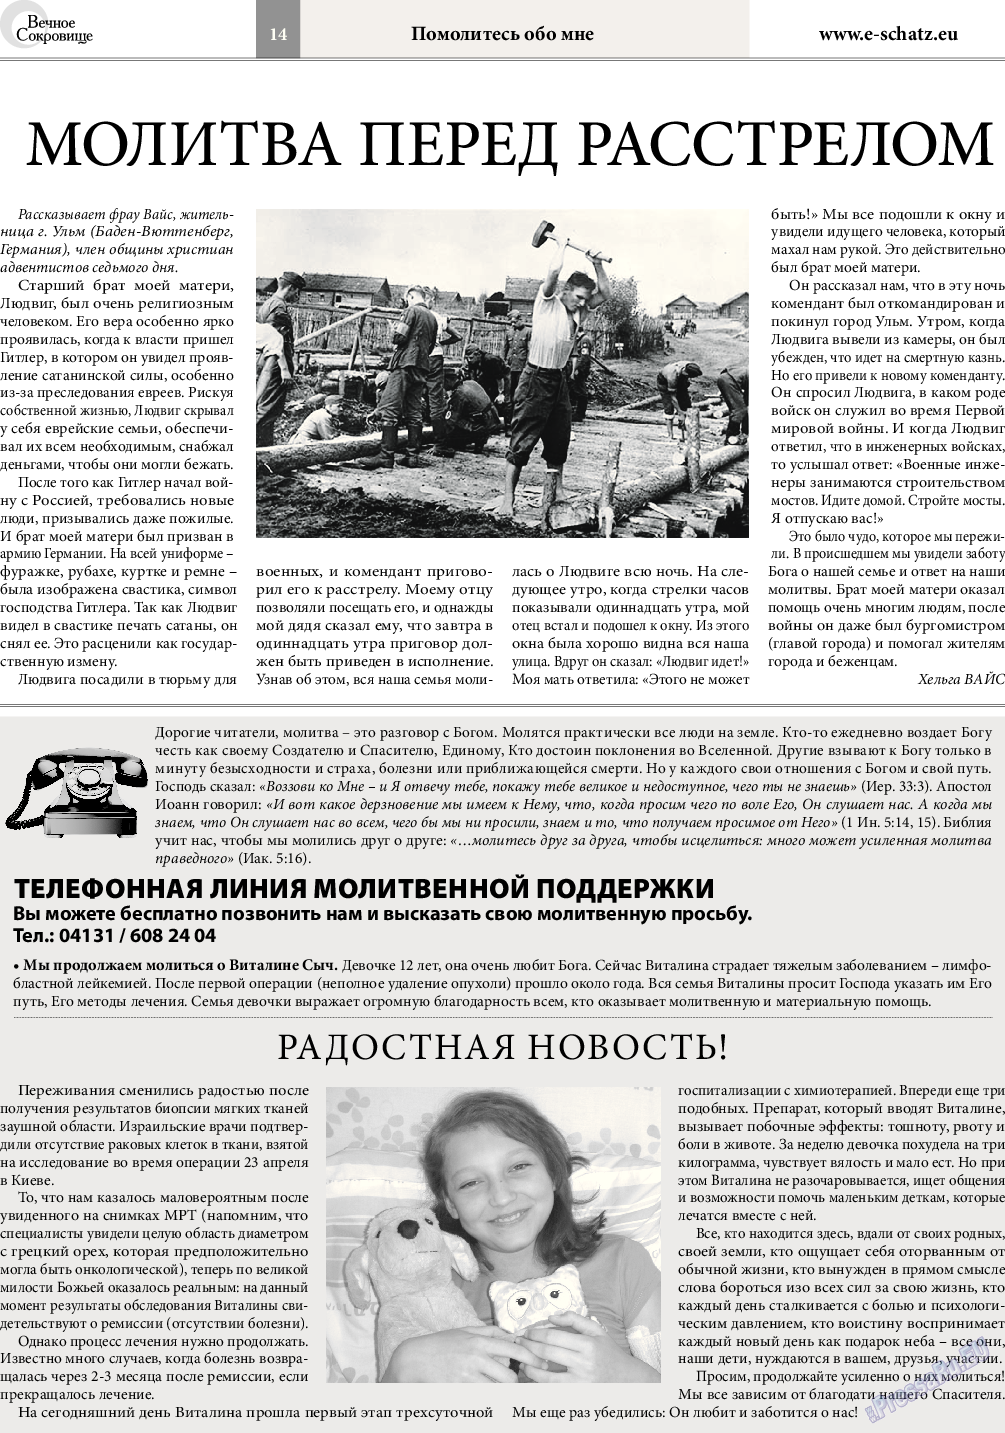 Вечное сокровище (газета). 2015 год, номер 3, стр. 14